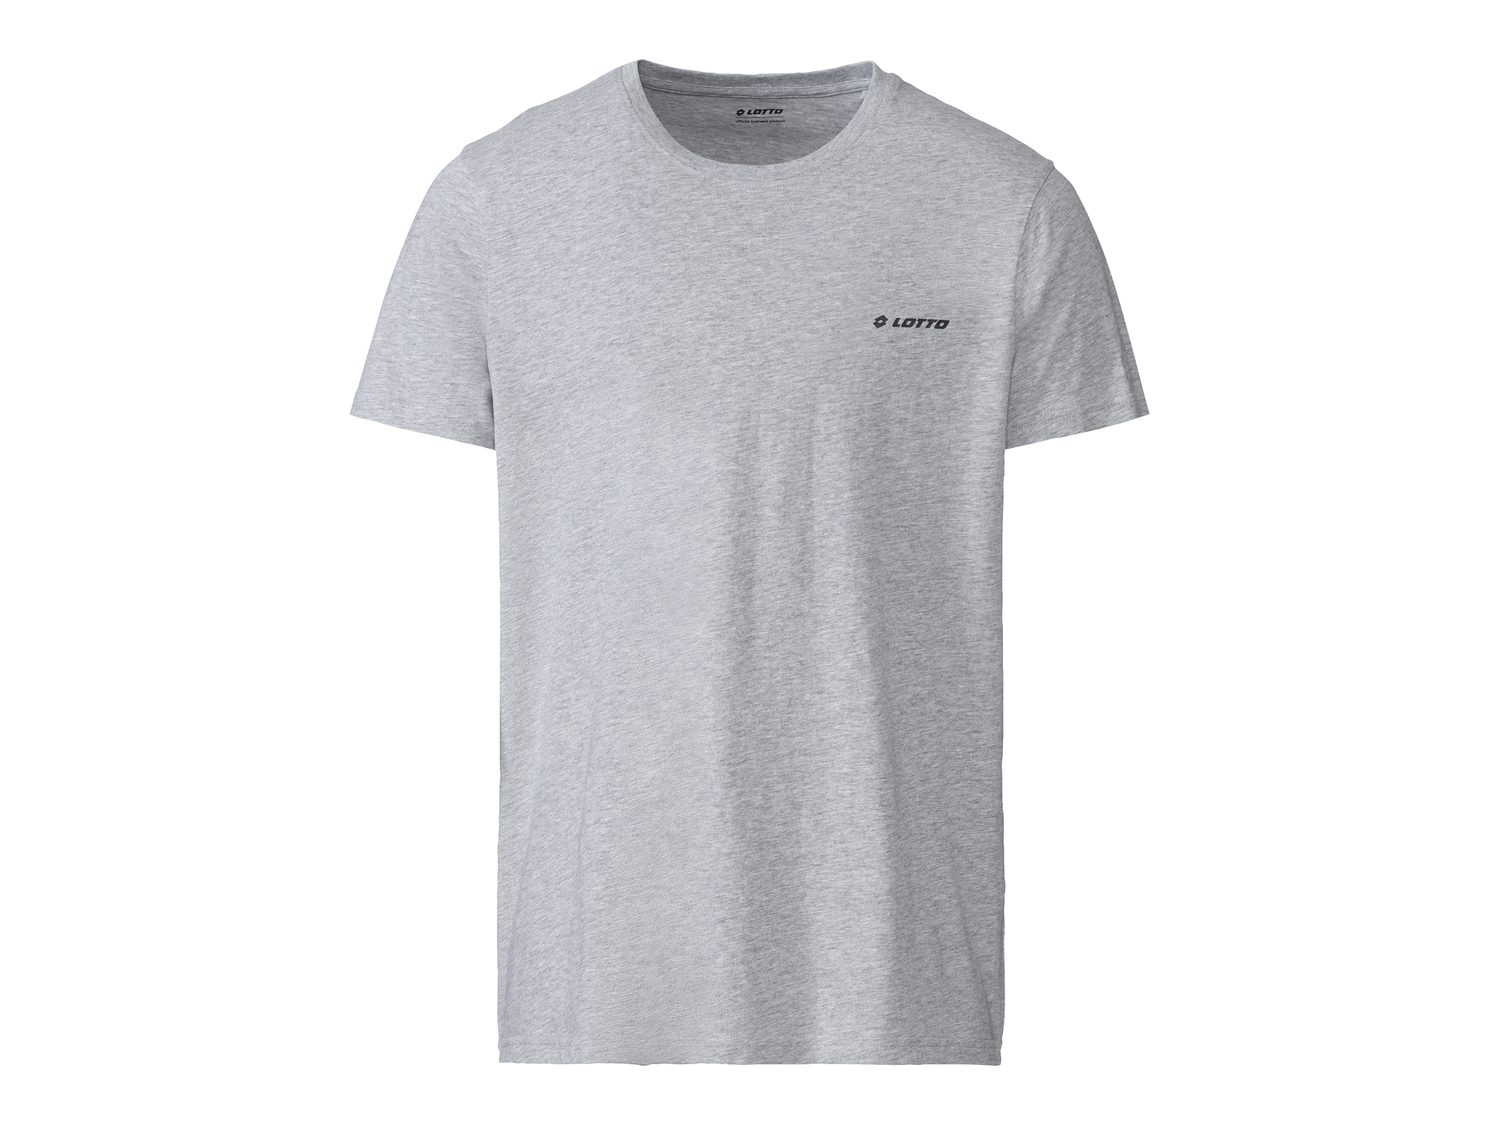 T-shirt da uomo Lotto, prezzo 7.99 &#8364; 
Misure: M-XL 
- -20%
Taglie disponibili

Caratteristiche

- ...